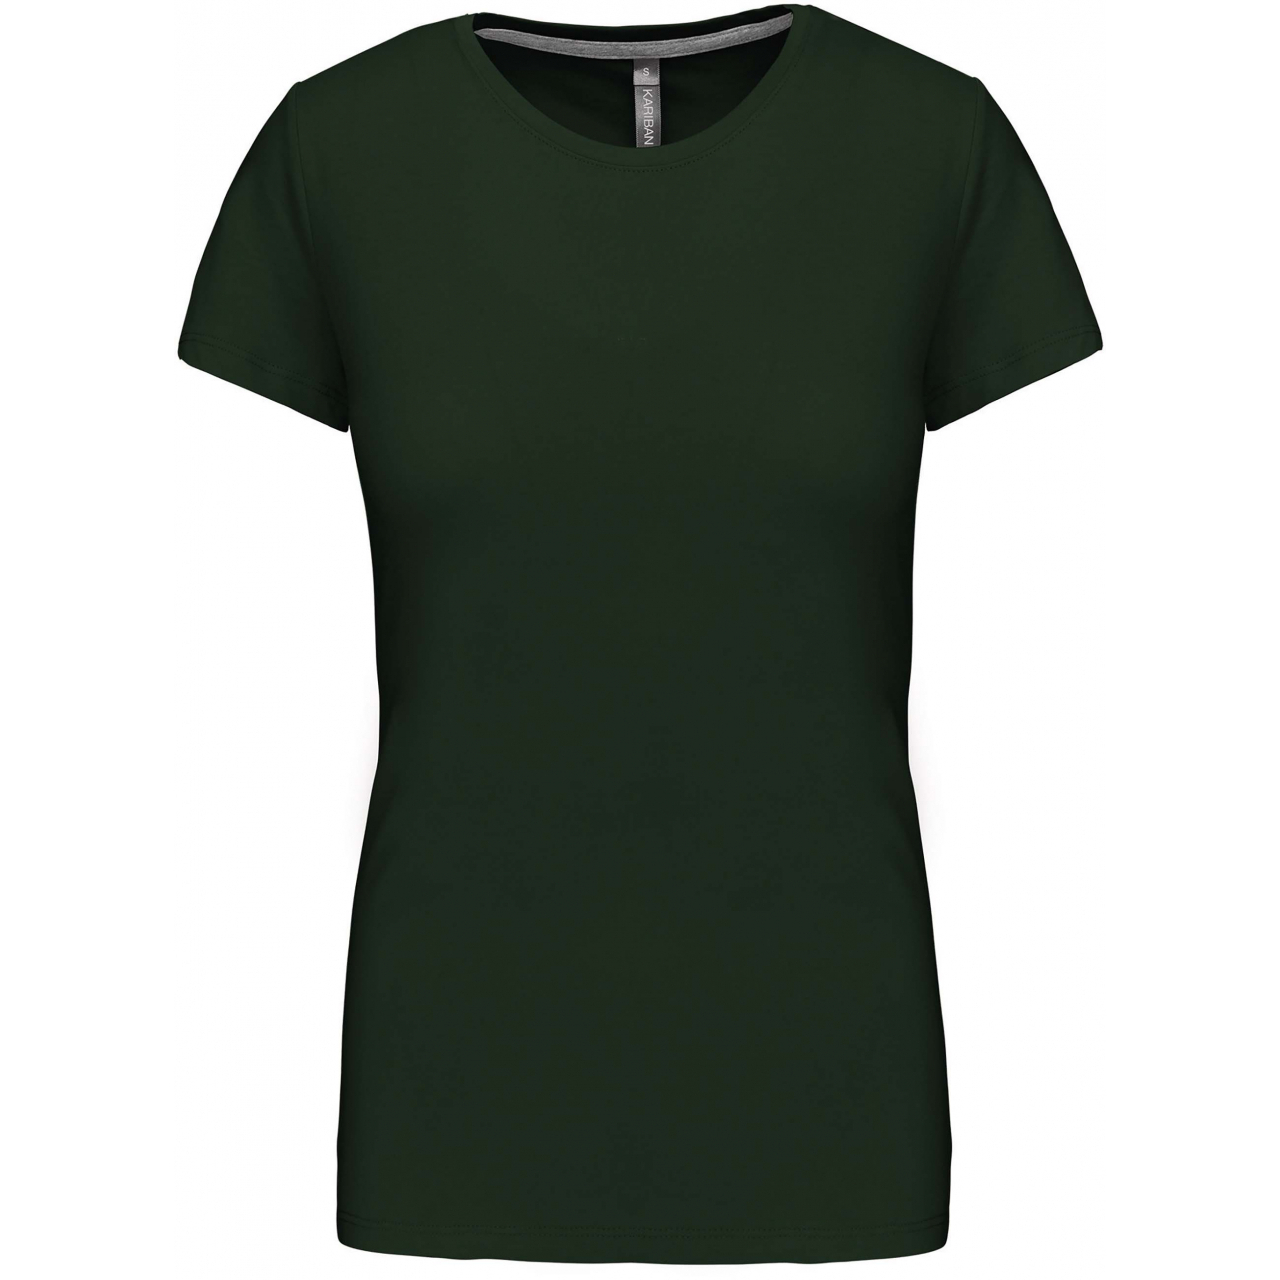 Dámské tričko Kariban s krátkým rukávem - tmavě zelené, XL